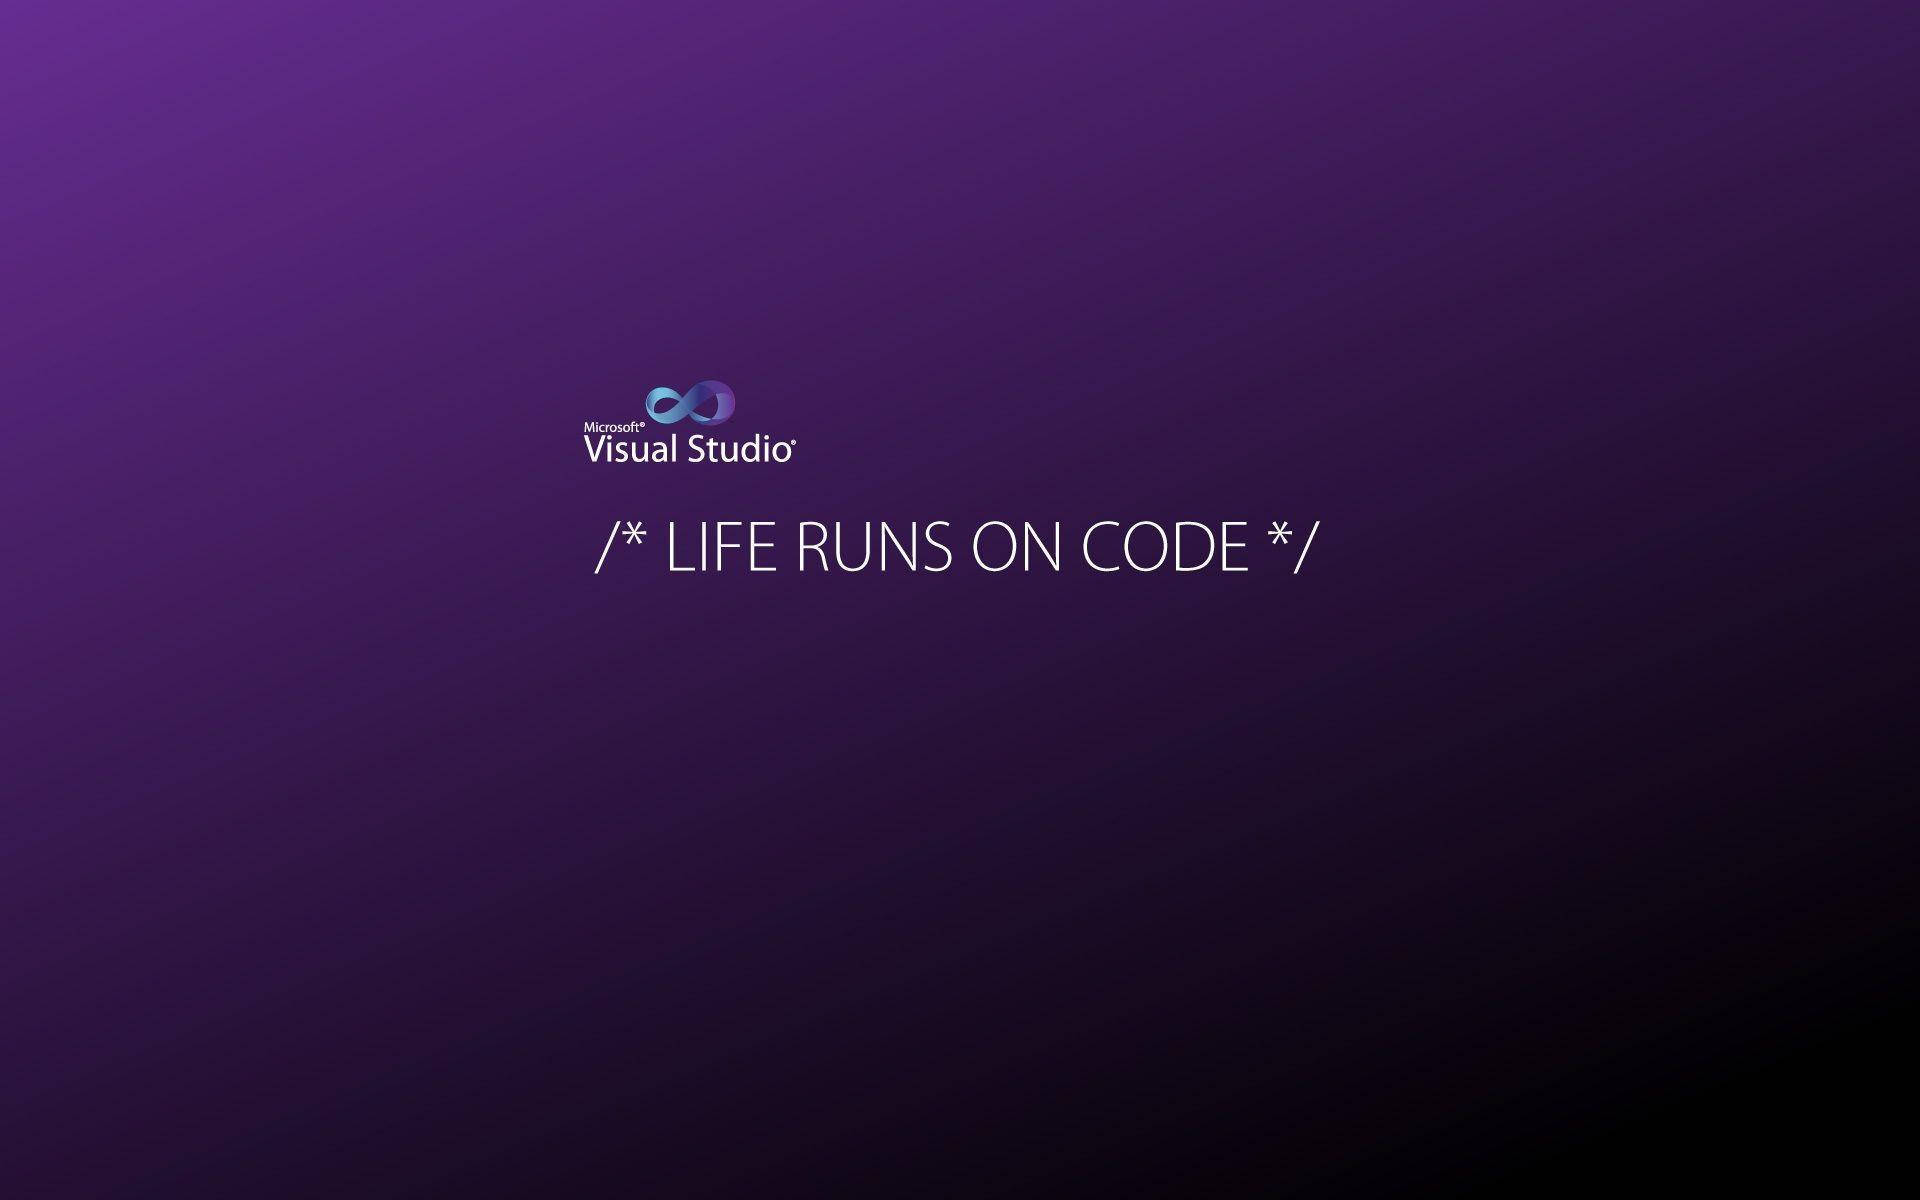 A Coder's Declaration Background